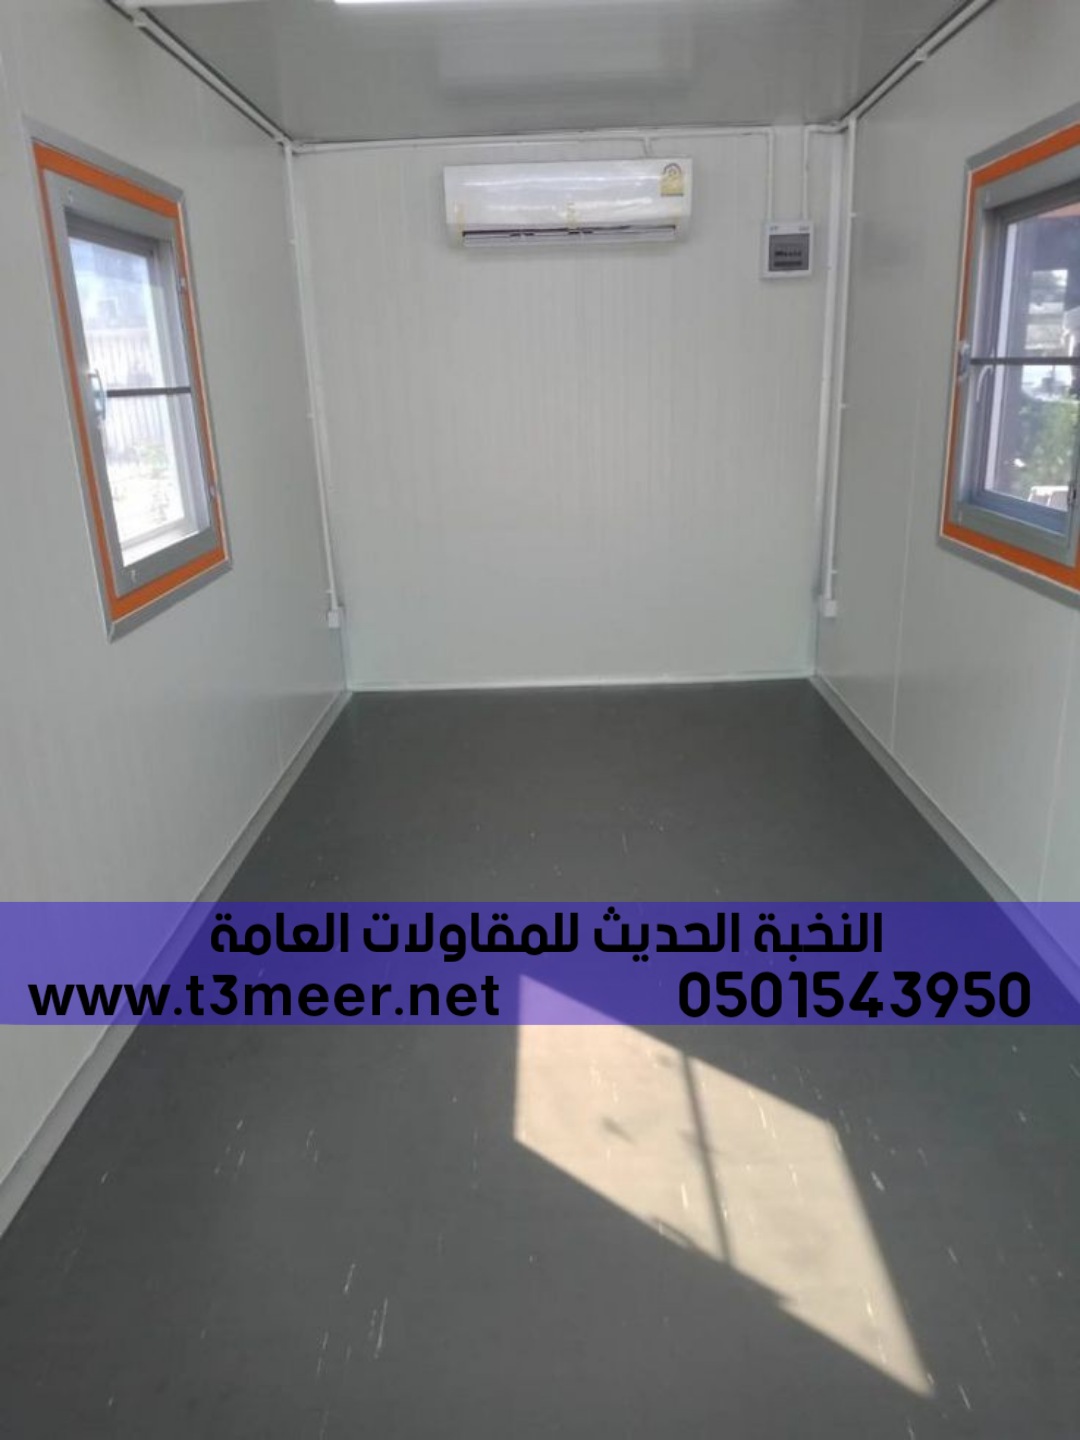 بيوت جاهزة غرف سندويش بنل الرياض الشرقية